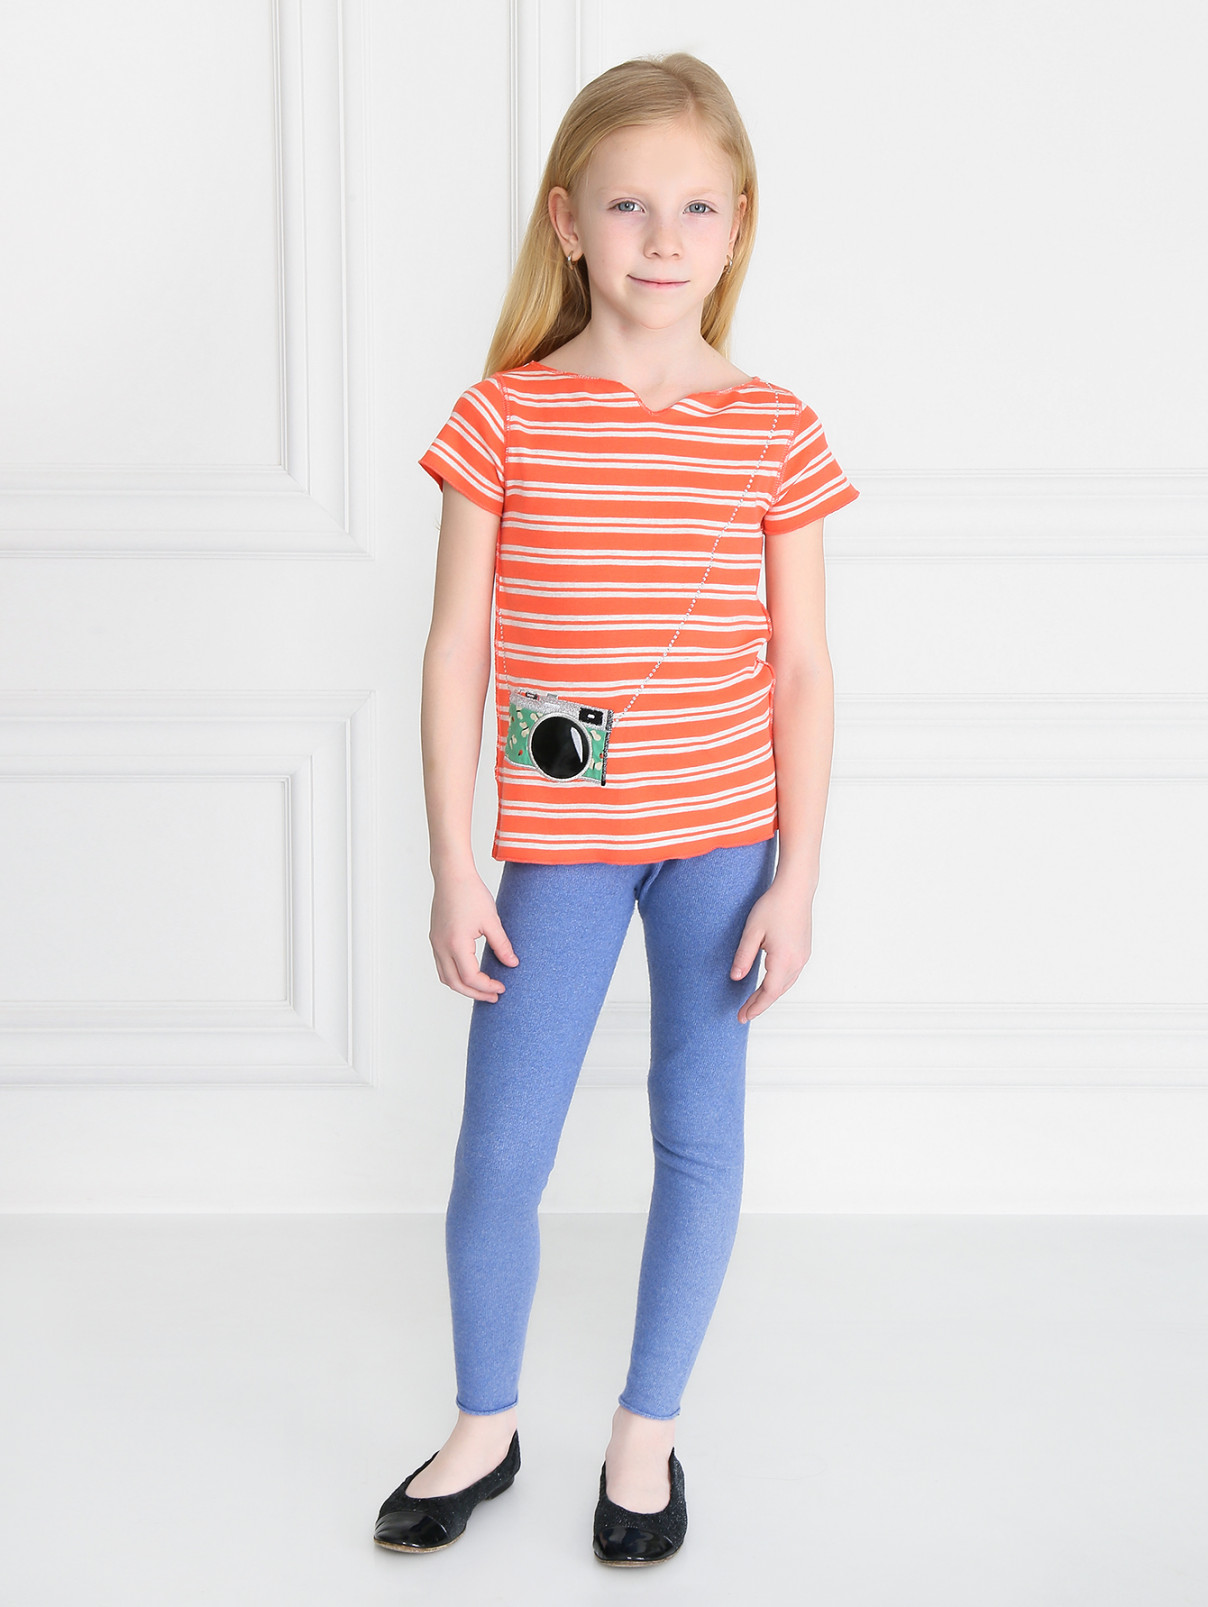 Футболка из хлопка в полоску с объемной аппликацией Sonia Rykiel  –  Модель Общий вид  – Цвет:  Оранжевый